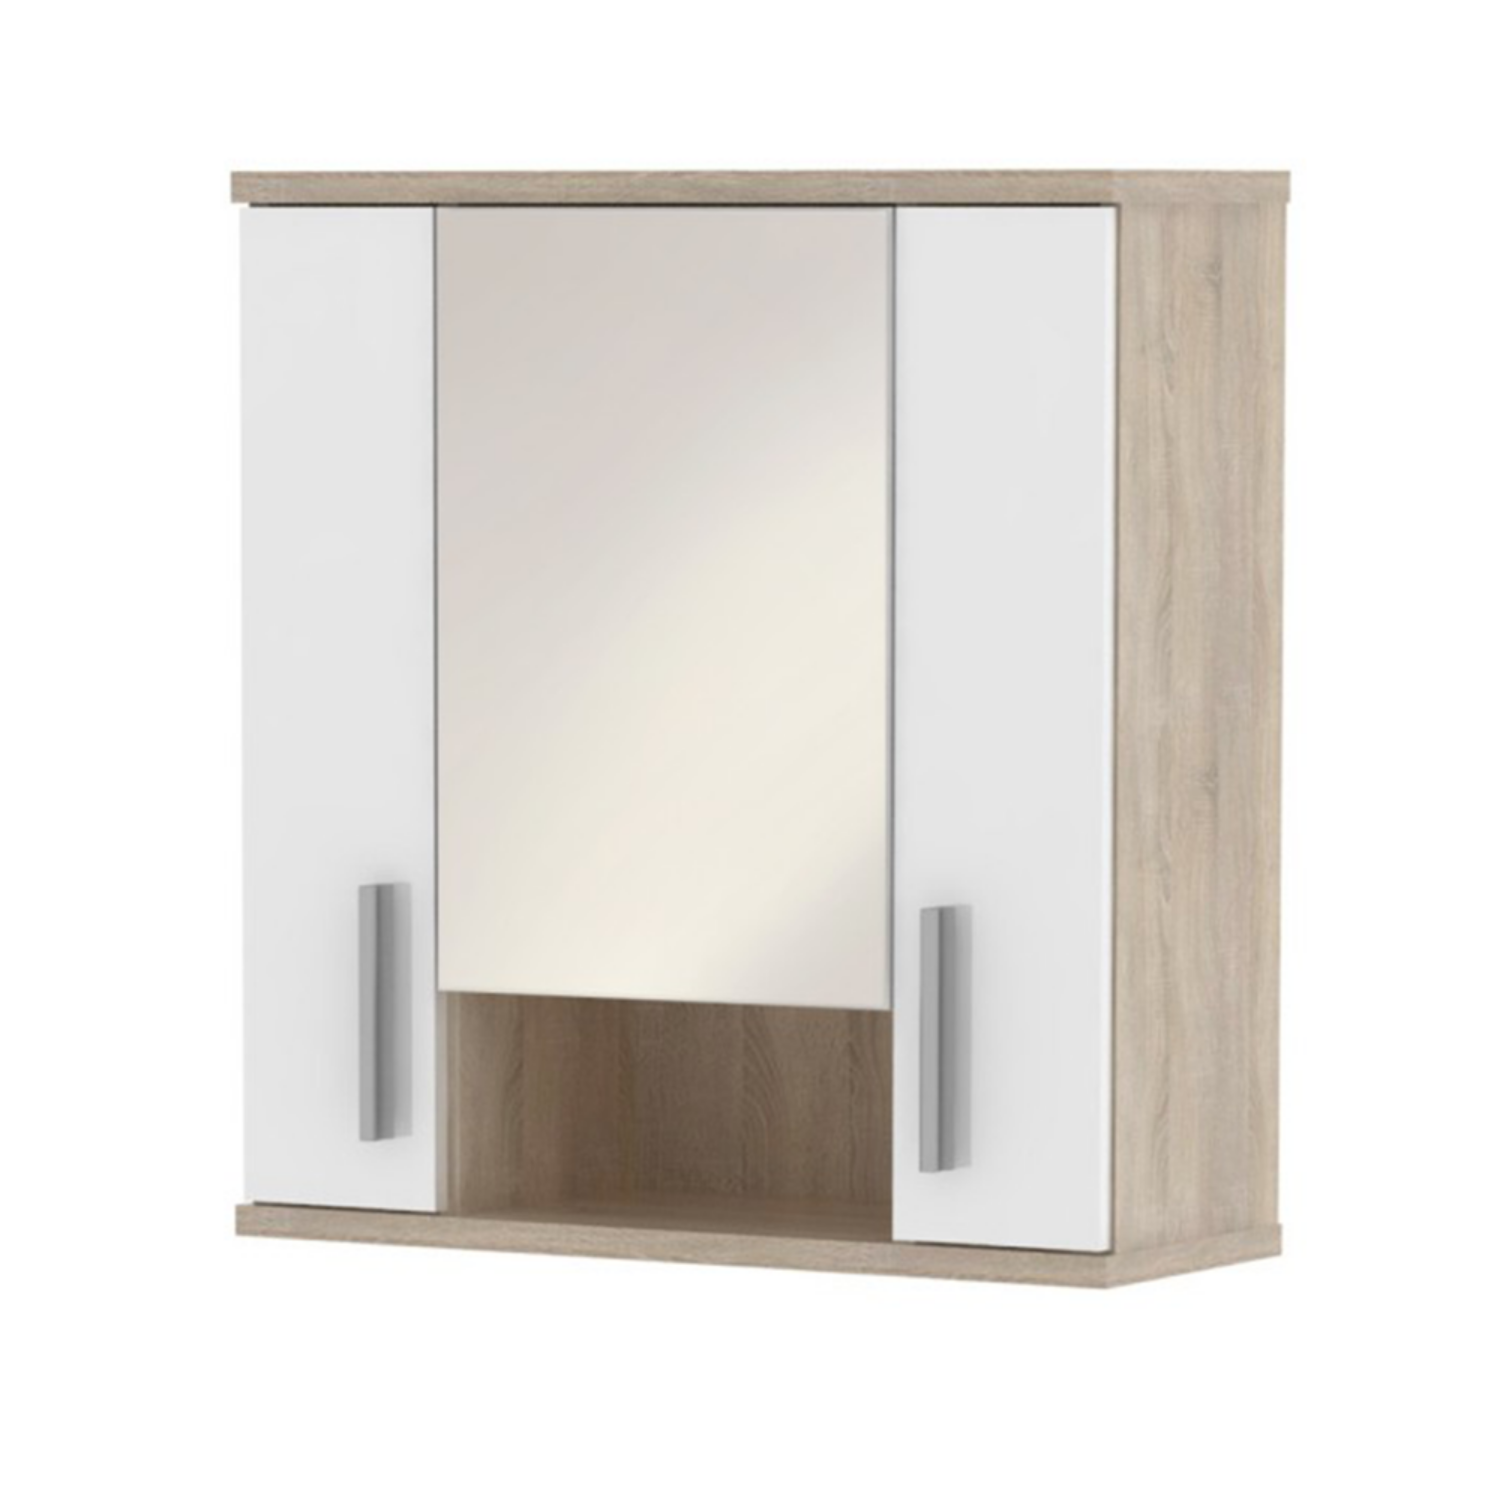 Függesztett szekrény tükörrel fehér féligfény  tölgyfa  sonoma LESSY LI 01